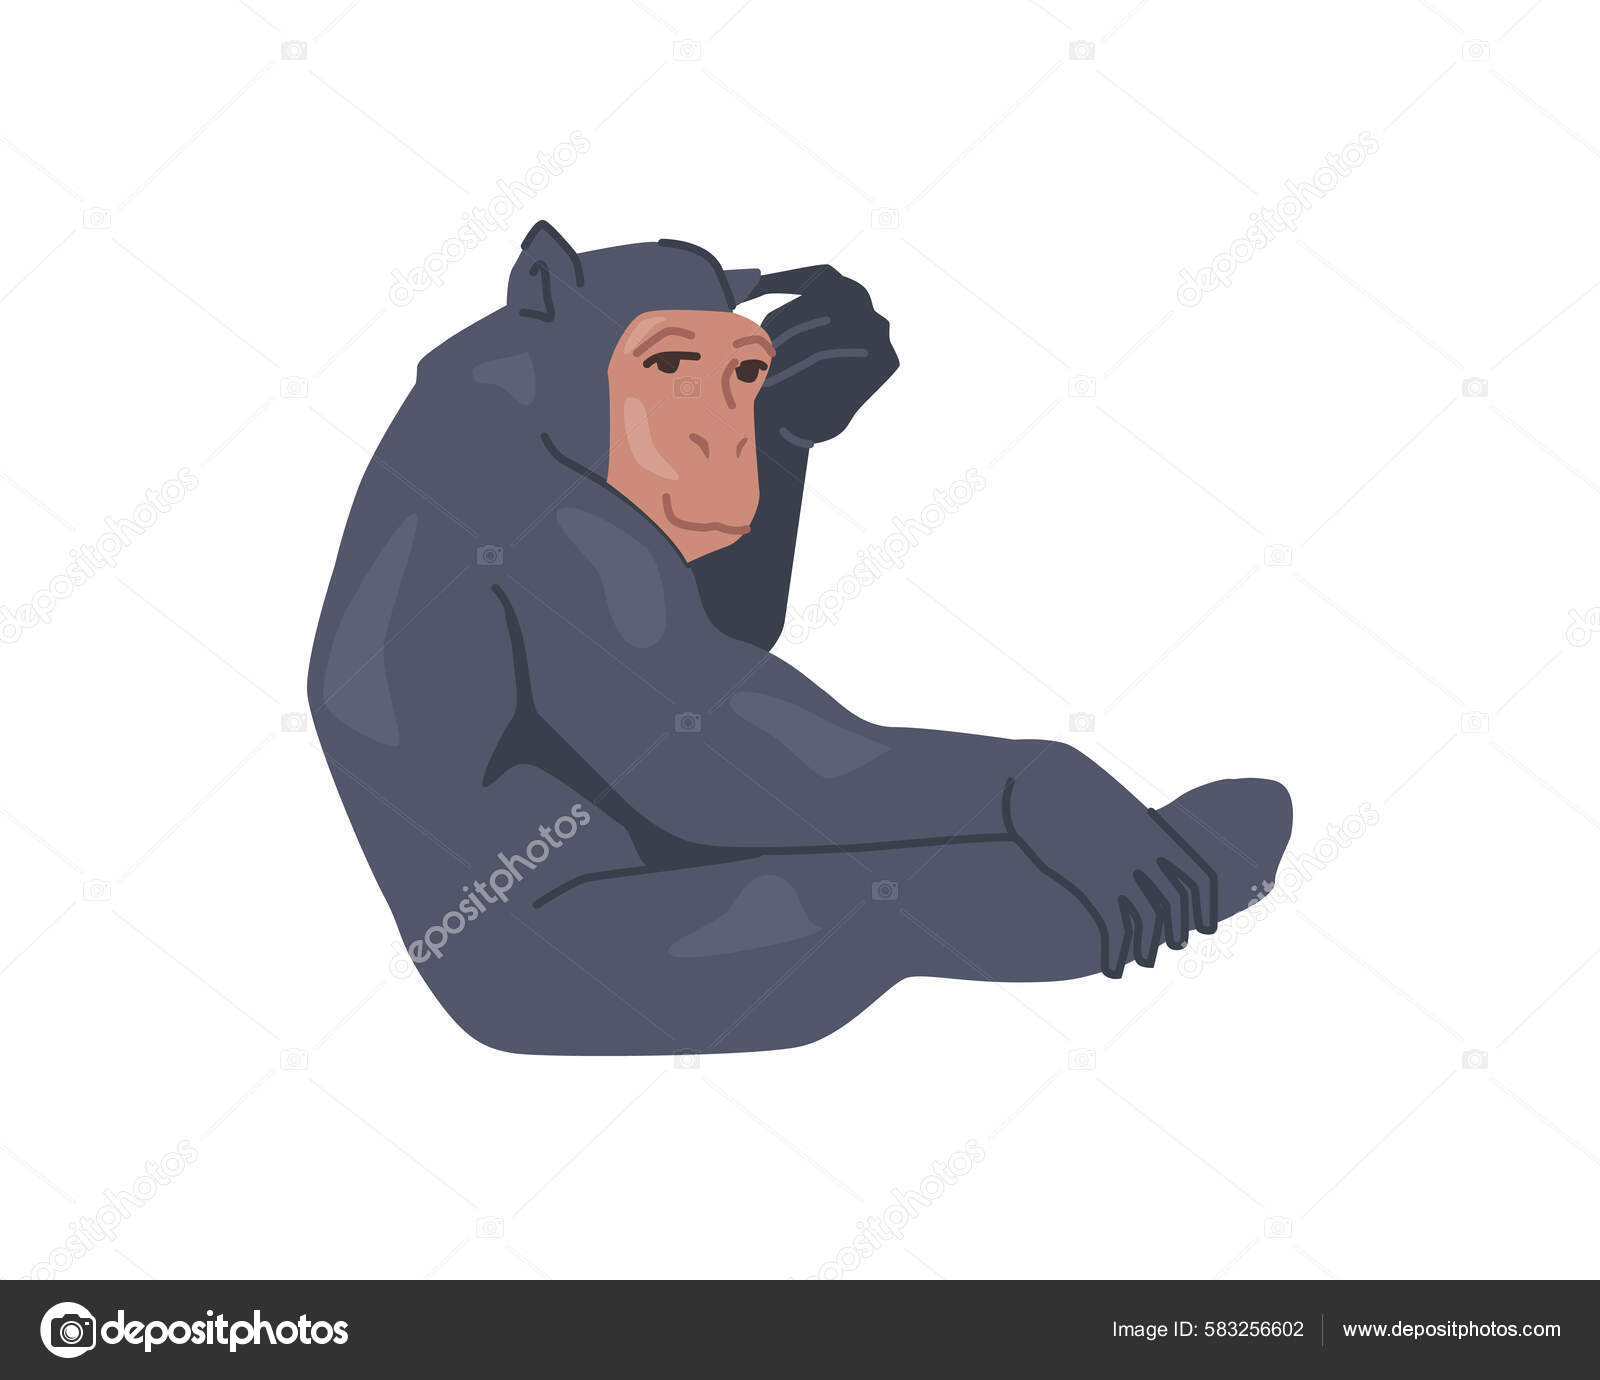 Ilustração vetorial desenhada à mão com alto detalhe de macaco sentado, desenho  realista, esboço